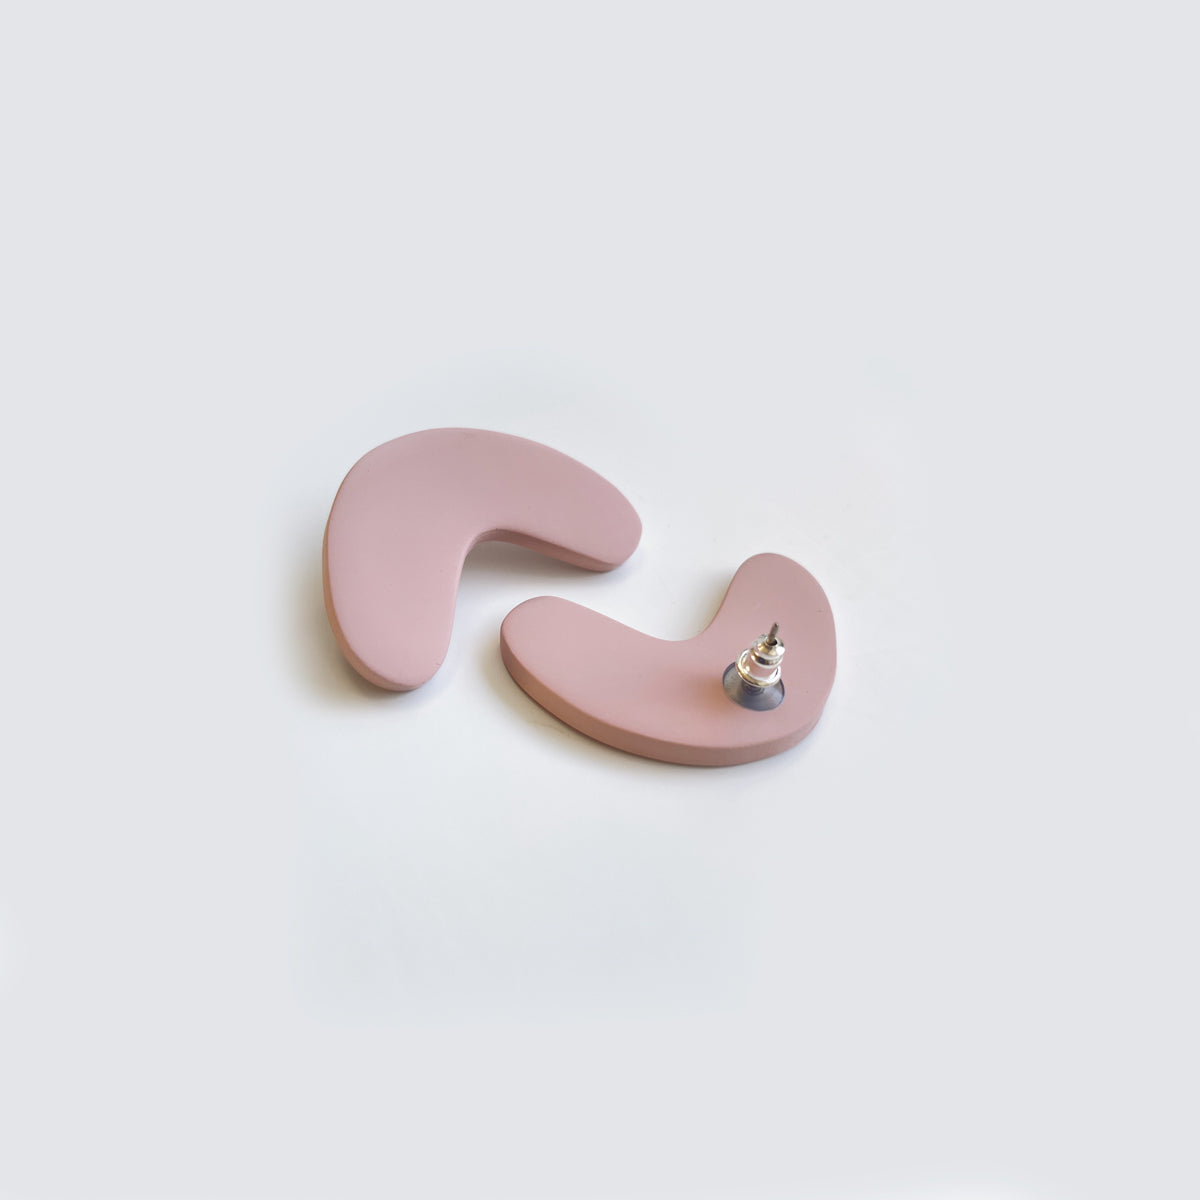 Boucles d'oreilles roses en pâte polymère. Fait à la main à Montréal par Adé Studio.